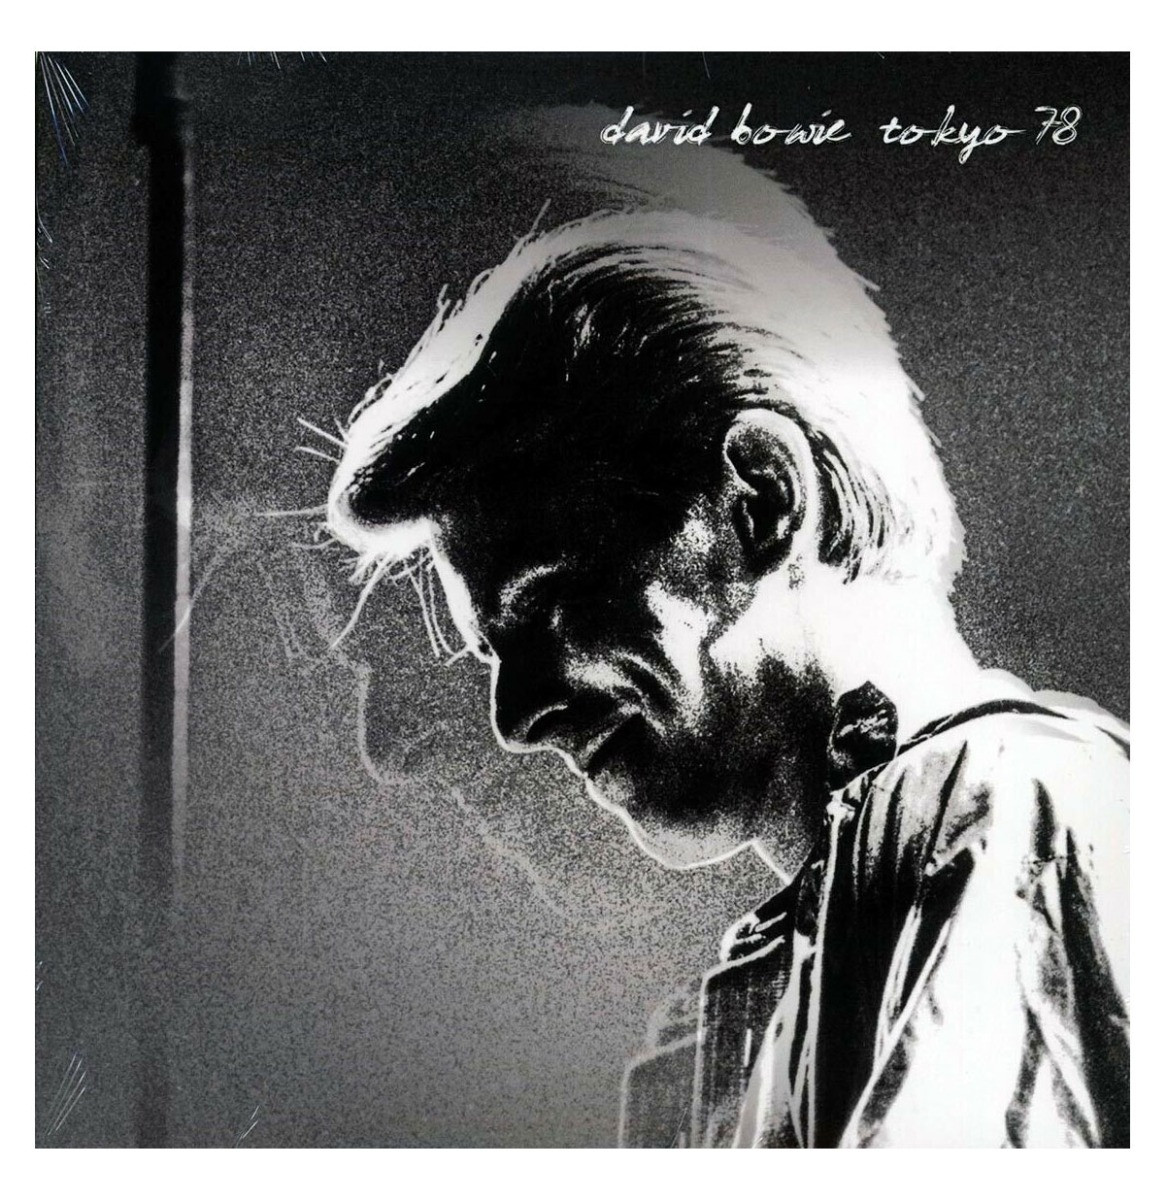 David Bowie - Tokyo 78 LP